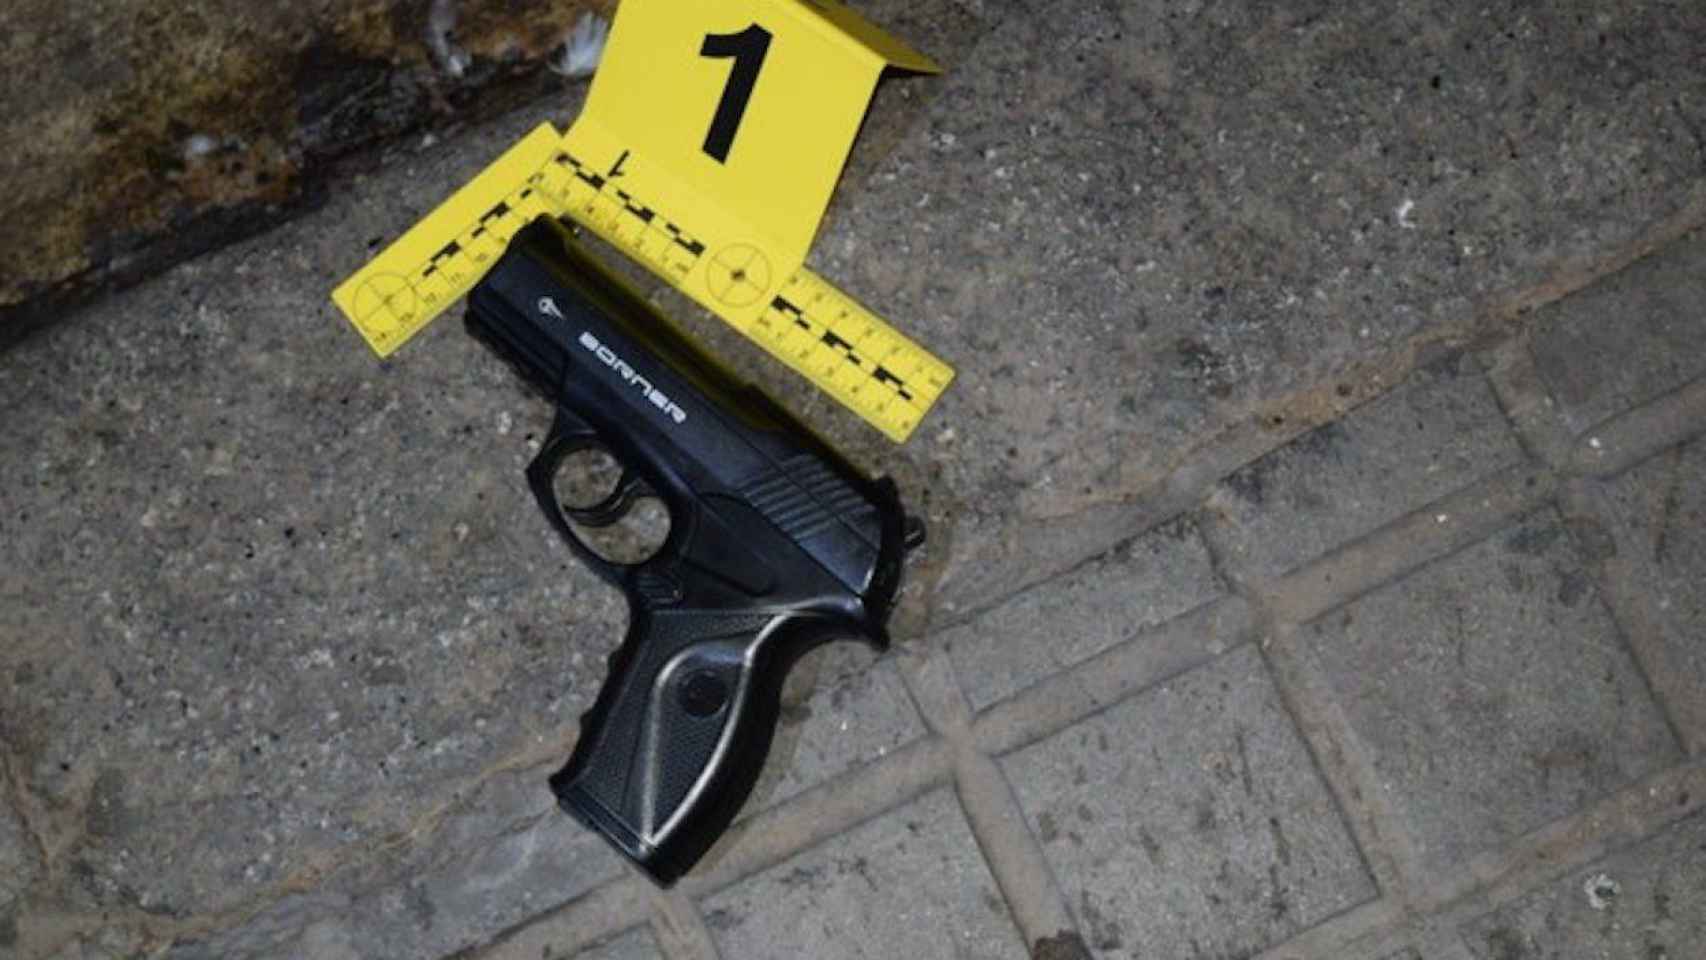 Fotografía de la pistola falsa usada por el ladrón / MOSSOS D'ESQUADRA